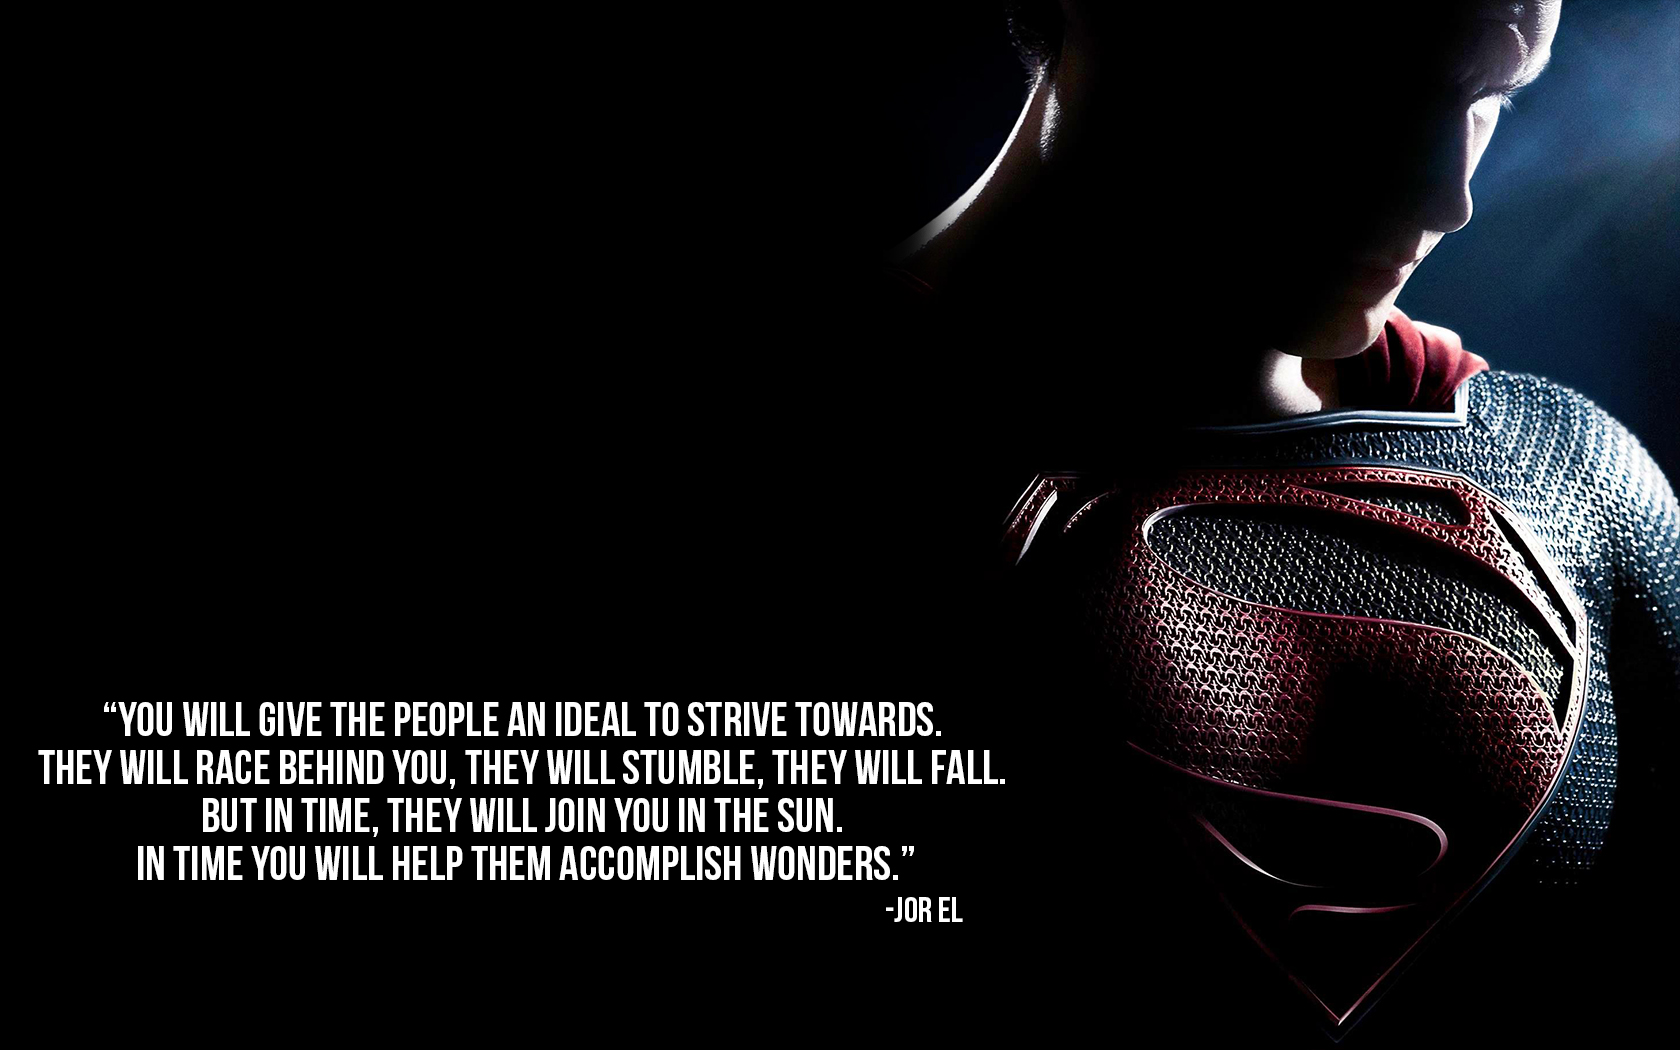 superman and batman quotes